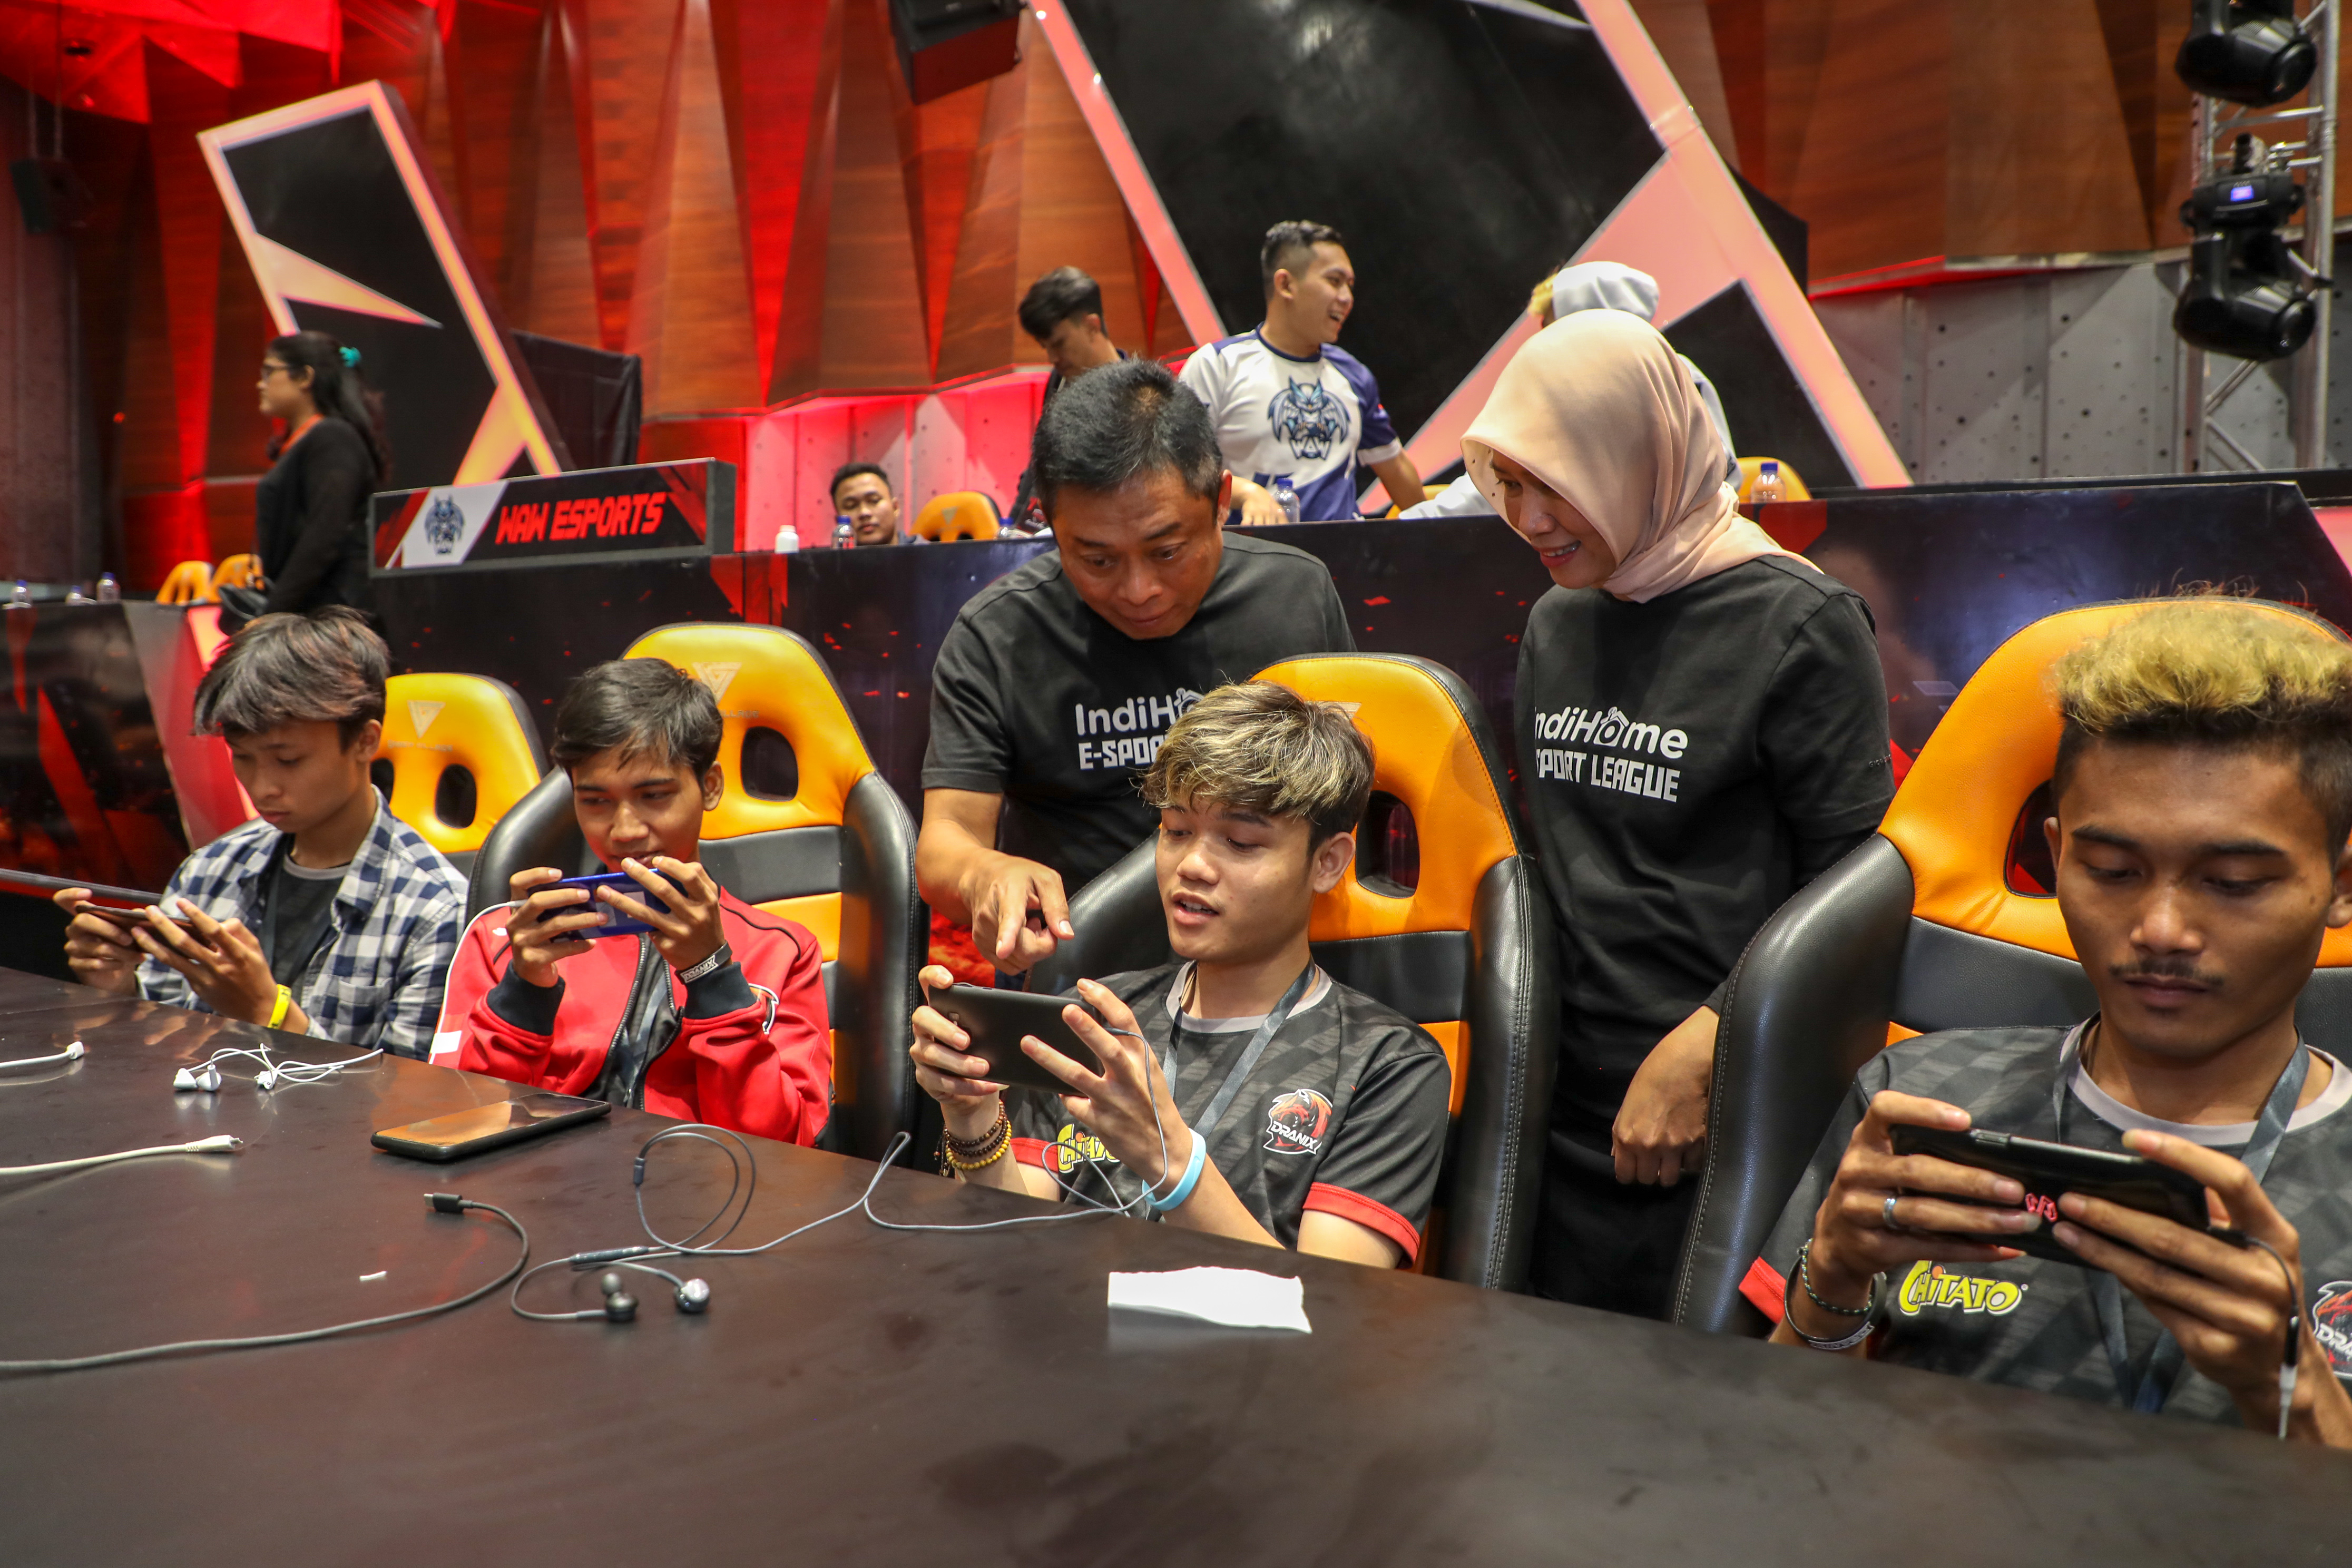 Direktur Utama Telkom Ririek Adriansyah (ketiga dari kiri) dan Direktur Consumer Service Telkom Siti Choiriana (kedua dari kanan) bebincang dengan peserta turnamen saat grand final IndiHome eSports League Games di Jakarta, Jumat (6/12).